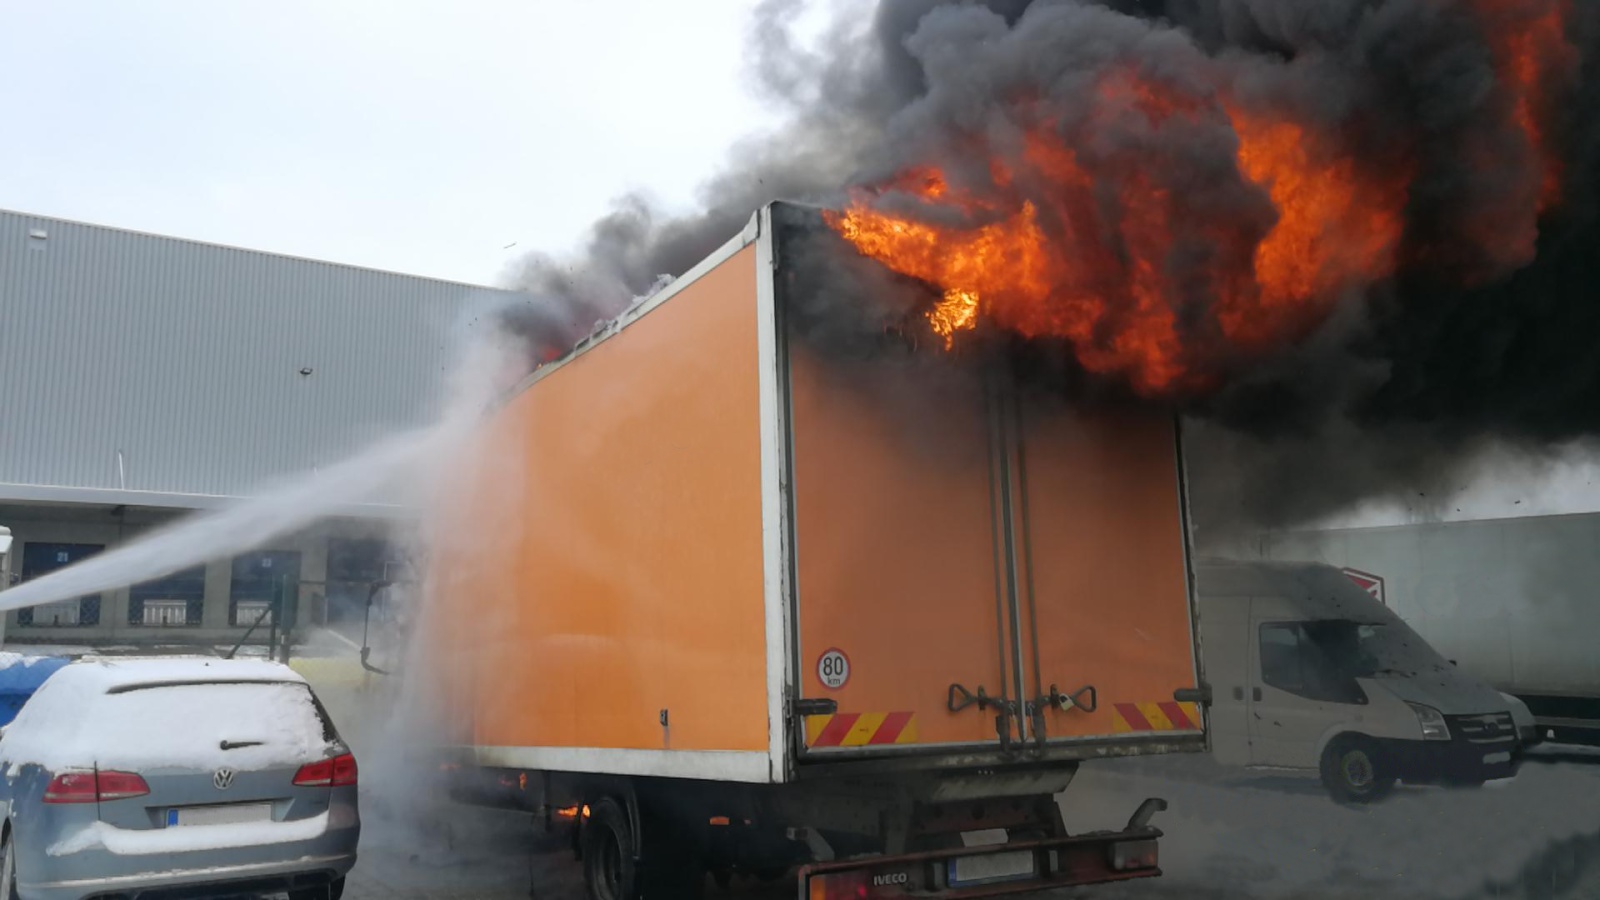 002 - Likvidace požáru nákladního vozidla.jpg